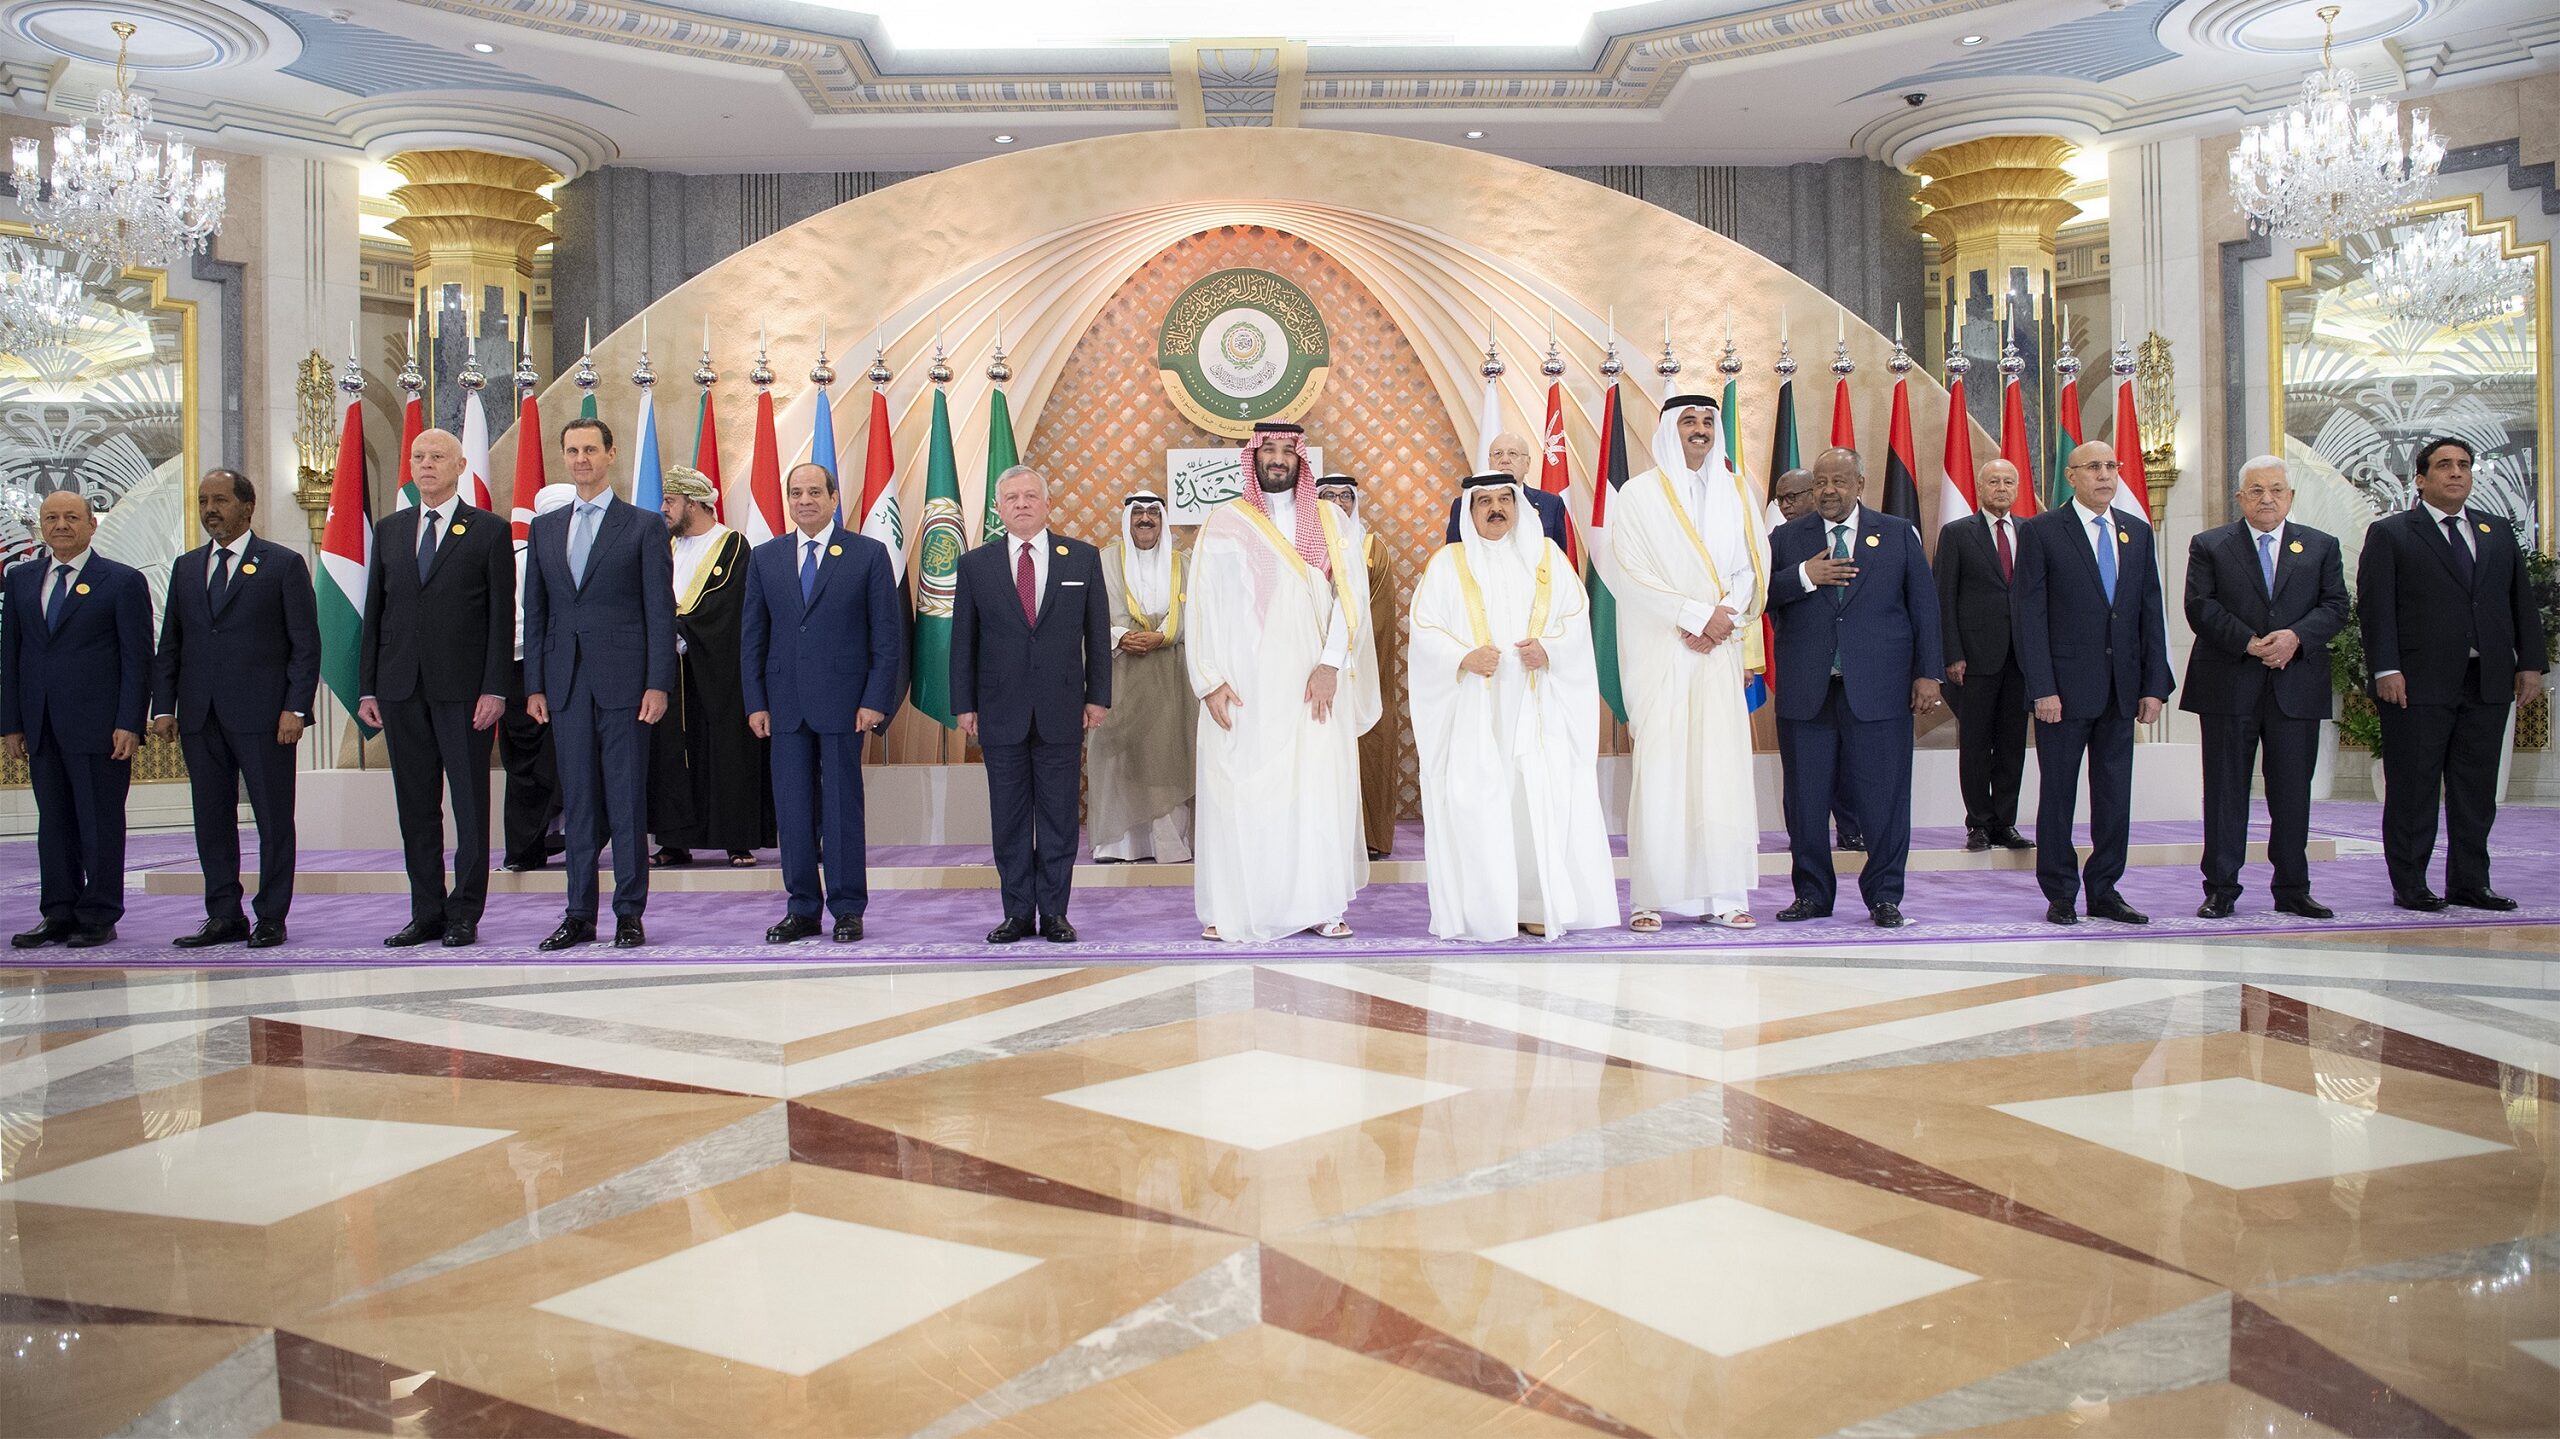 Urgent Strategic Questions Following the Arab Summit